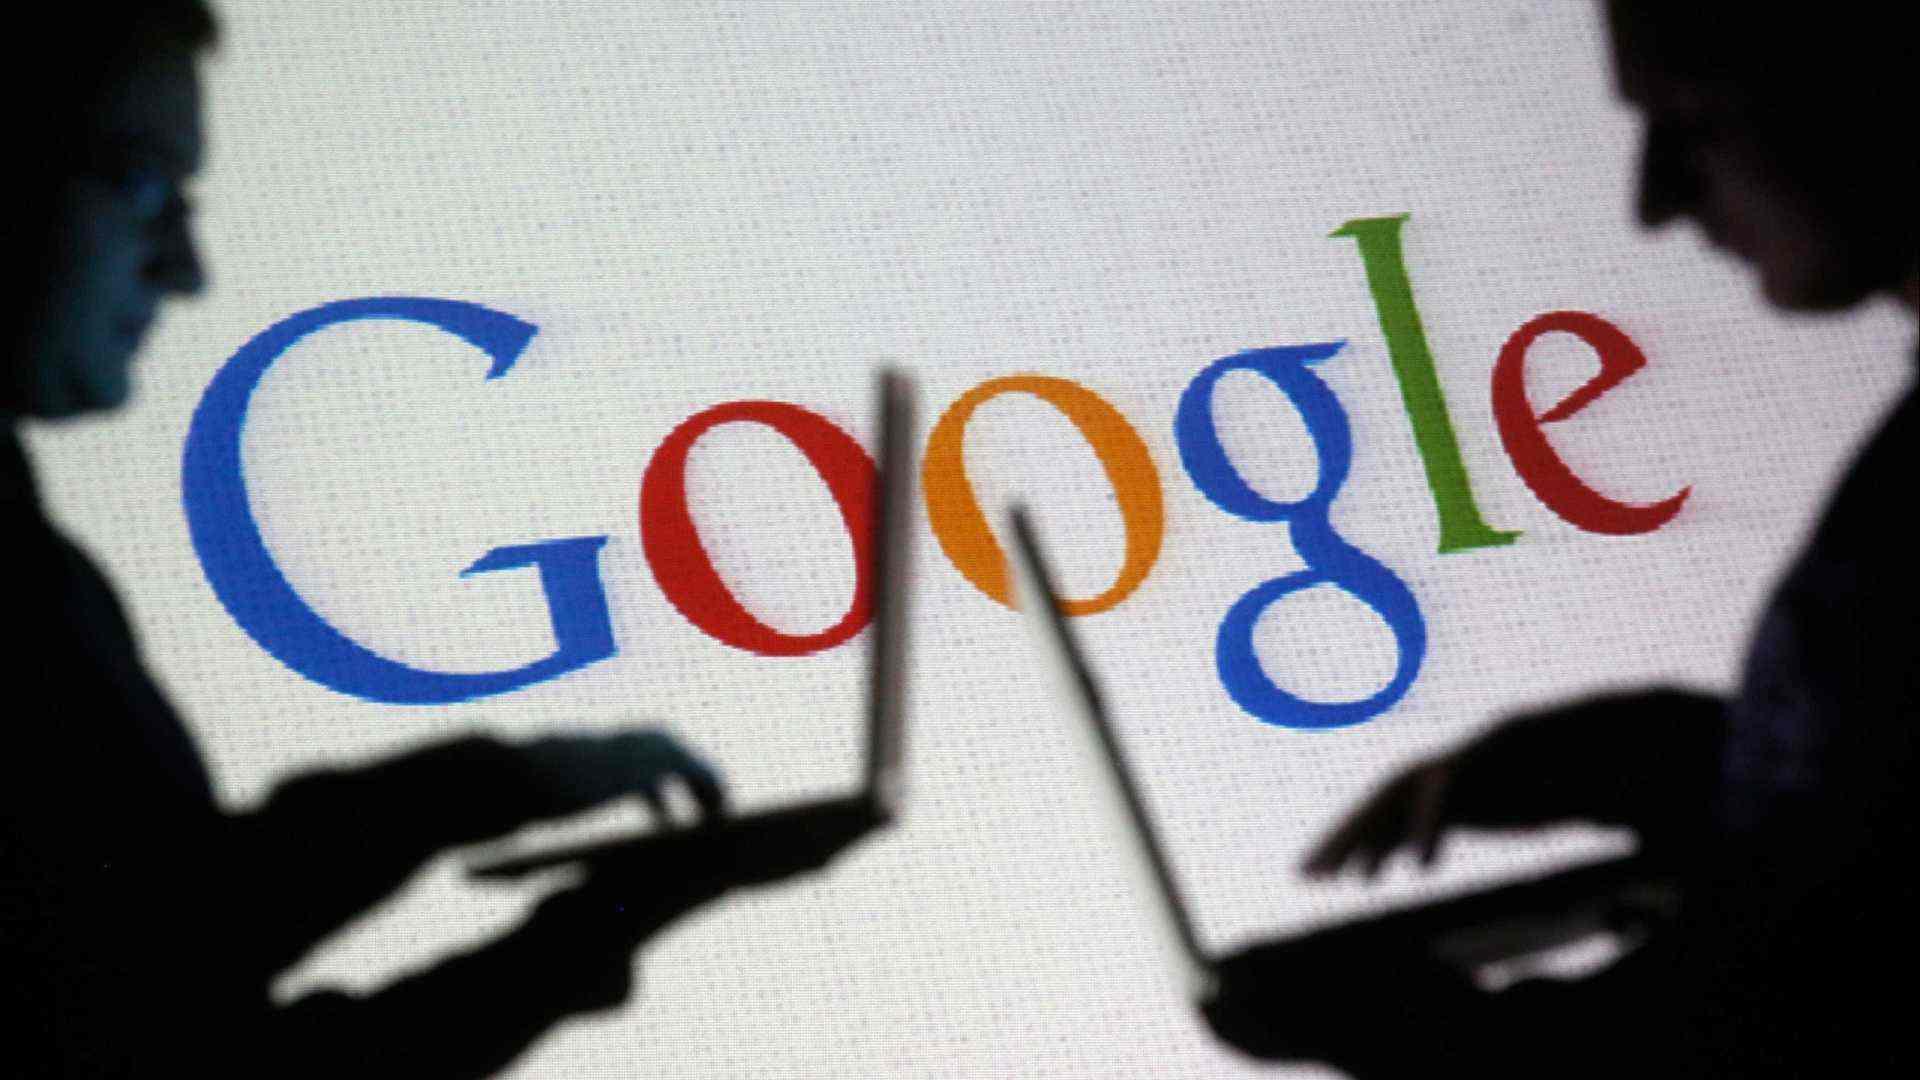 Desenvolvedores da Google questionam relações da empresa com o governo dos EUA